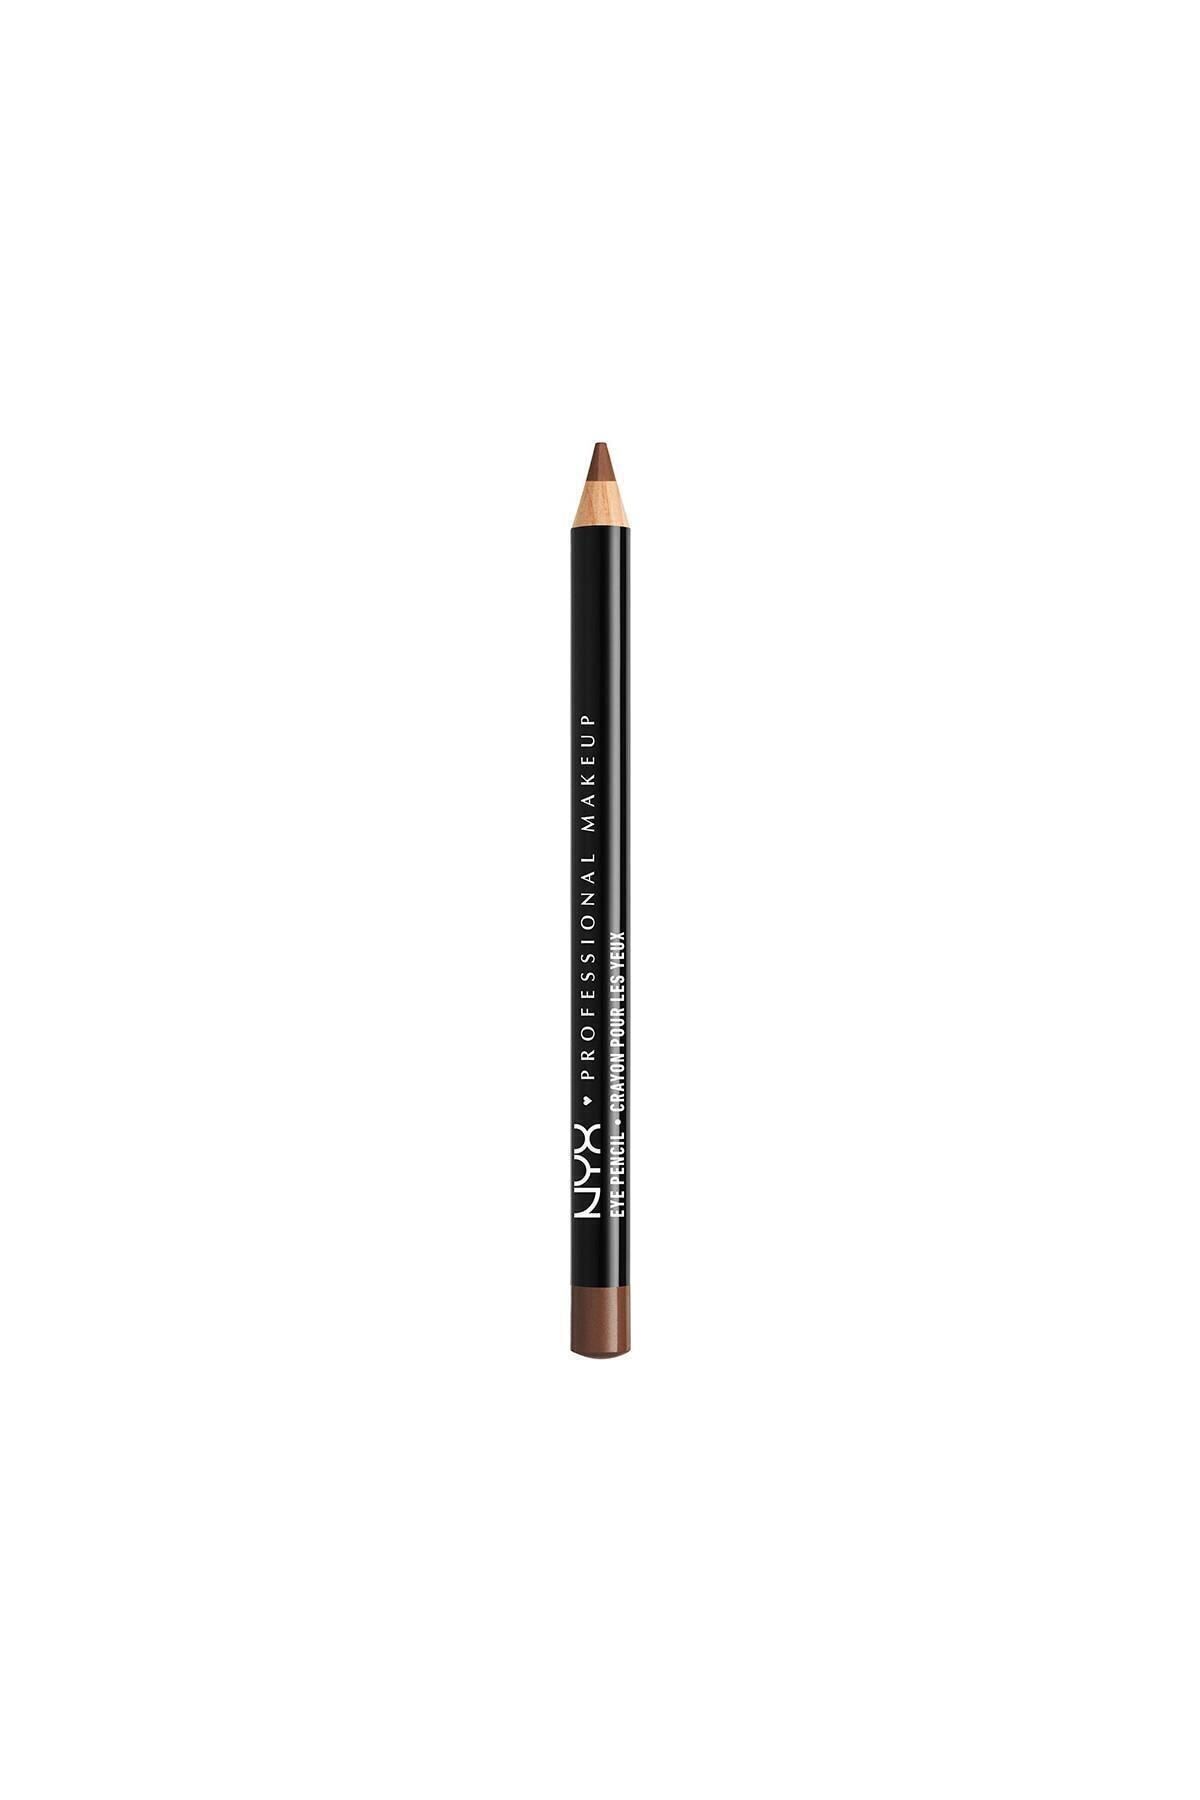 NYX Professional Makeup Göz Kalemi - Slim Eye Pencil Brown 800897109028